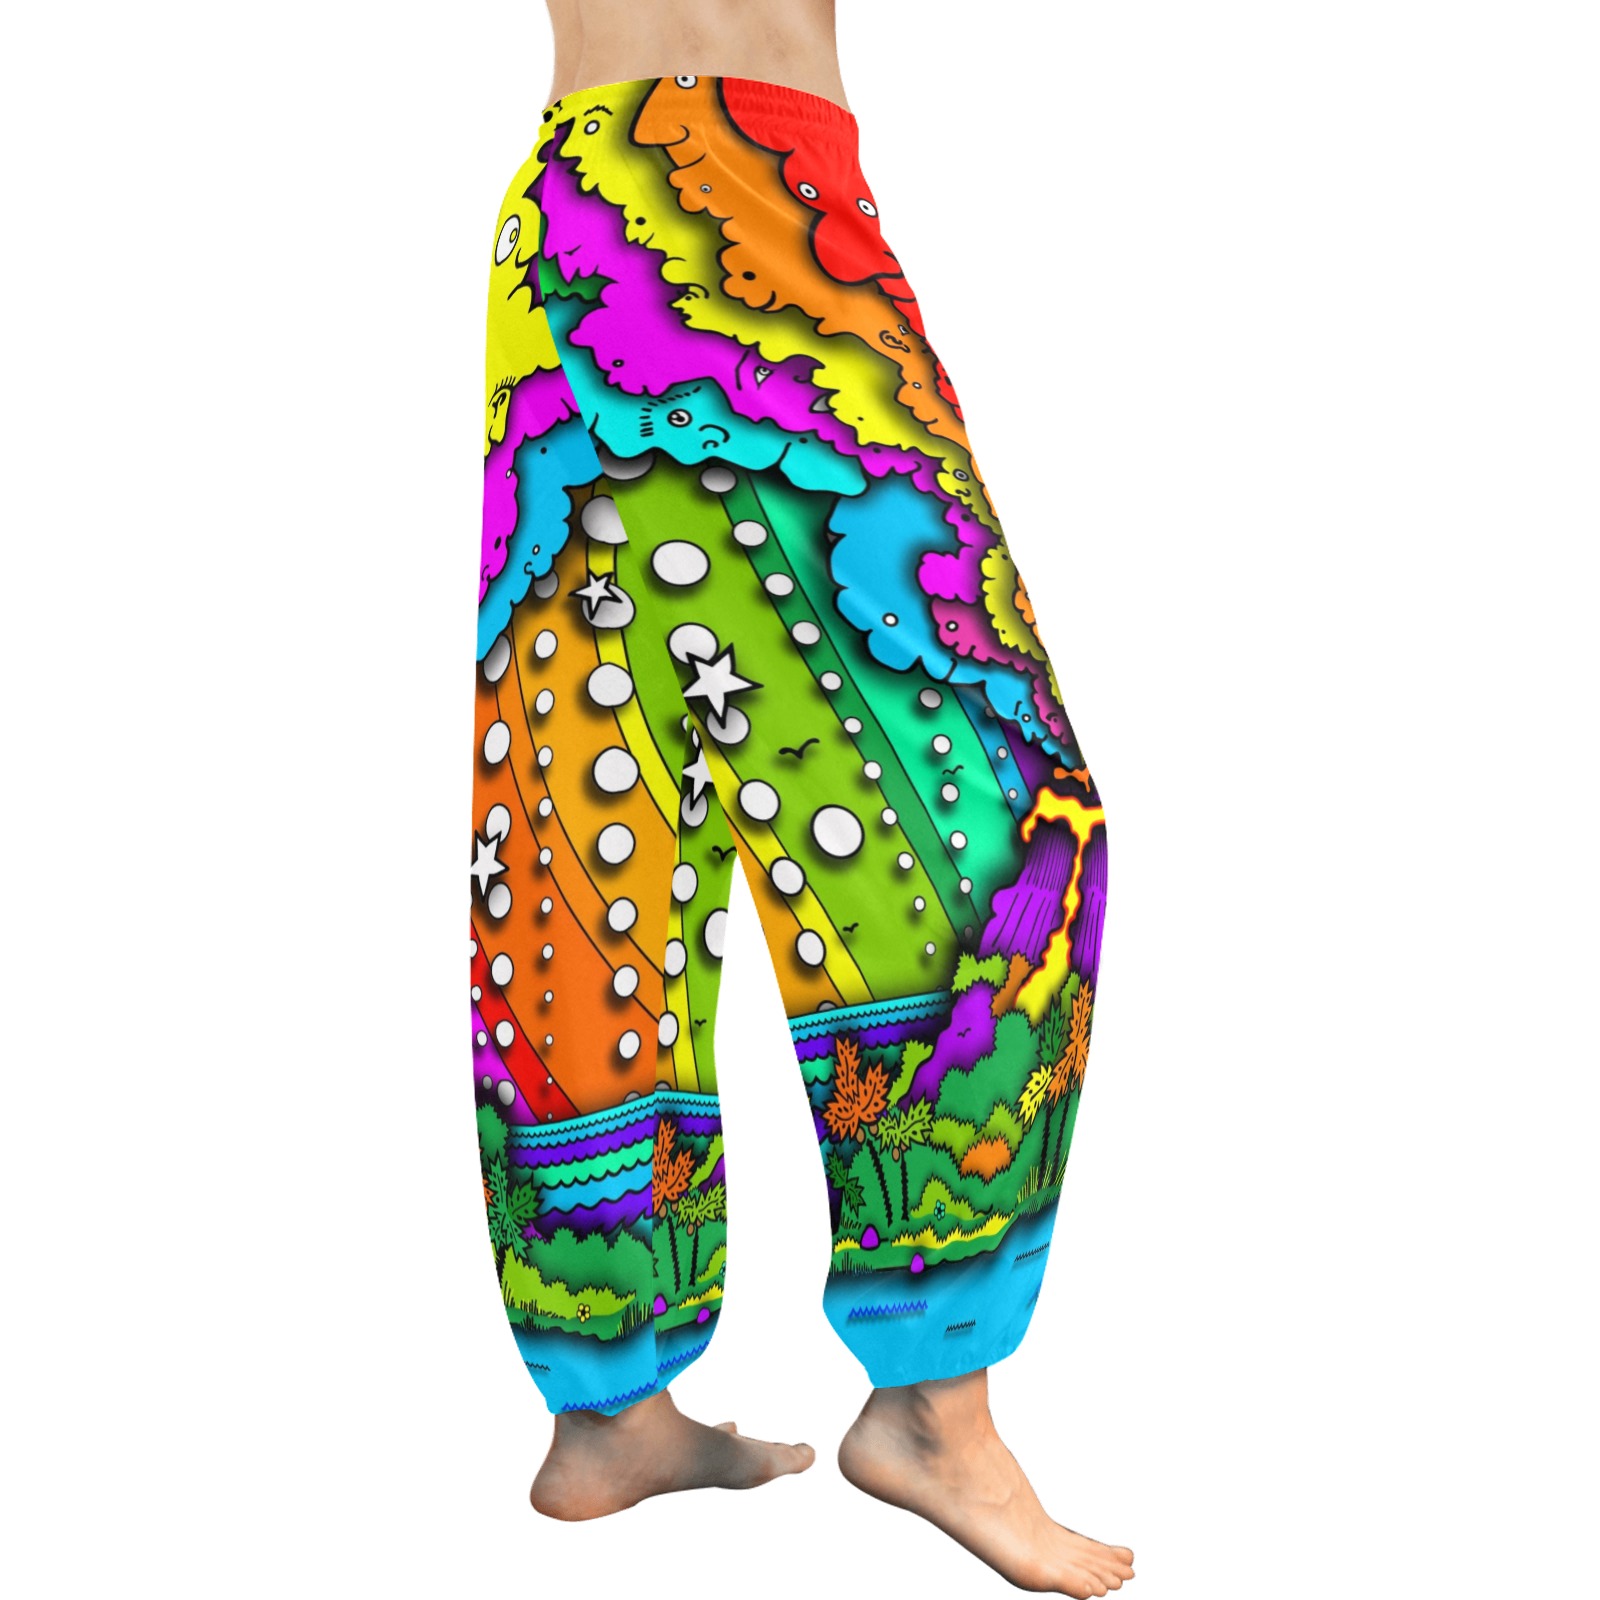 ITEM 18 _ HAREM PANTS - TINY ISLAND Women's All Over Print Harem Pants (Model L18)